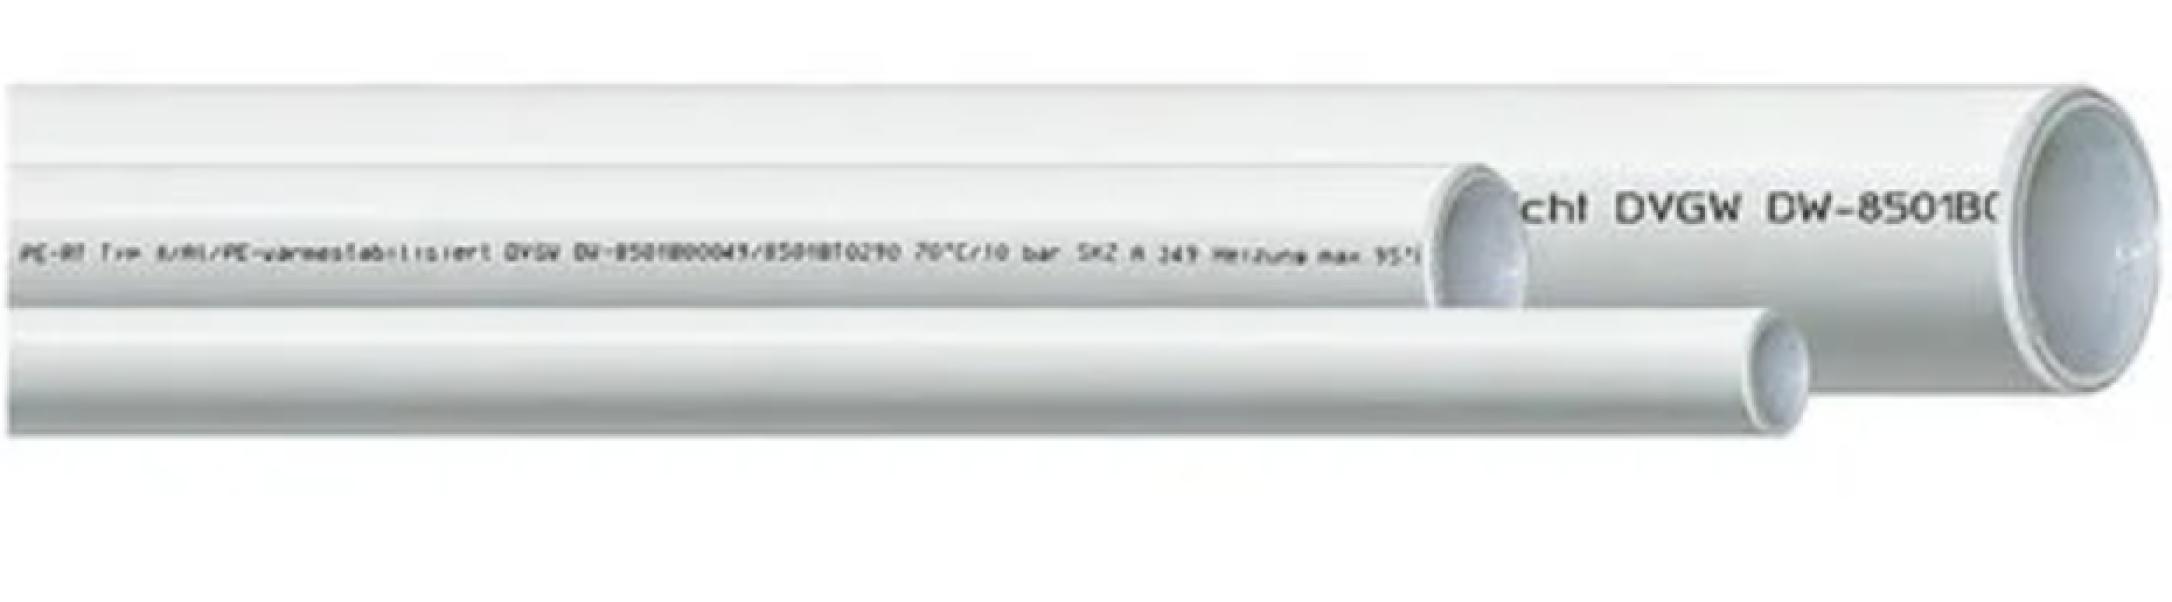 Tubo multistrato in barre Idro-Bric diametro 20x0.2 mm da 2m - CARRMT0021BA 01